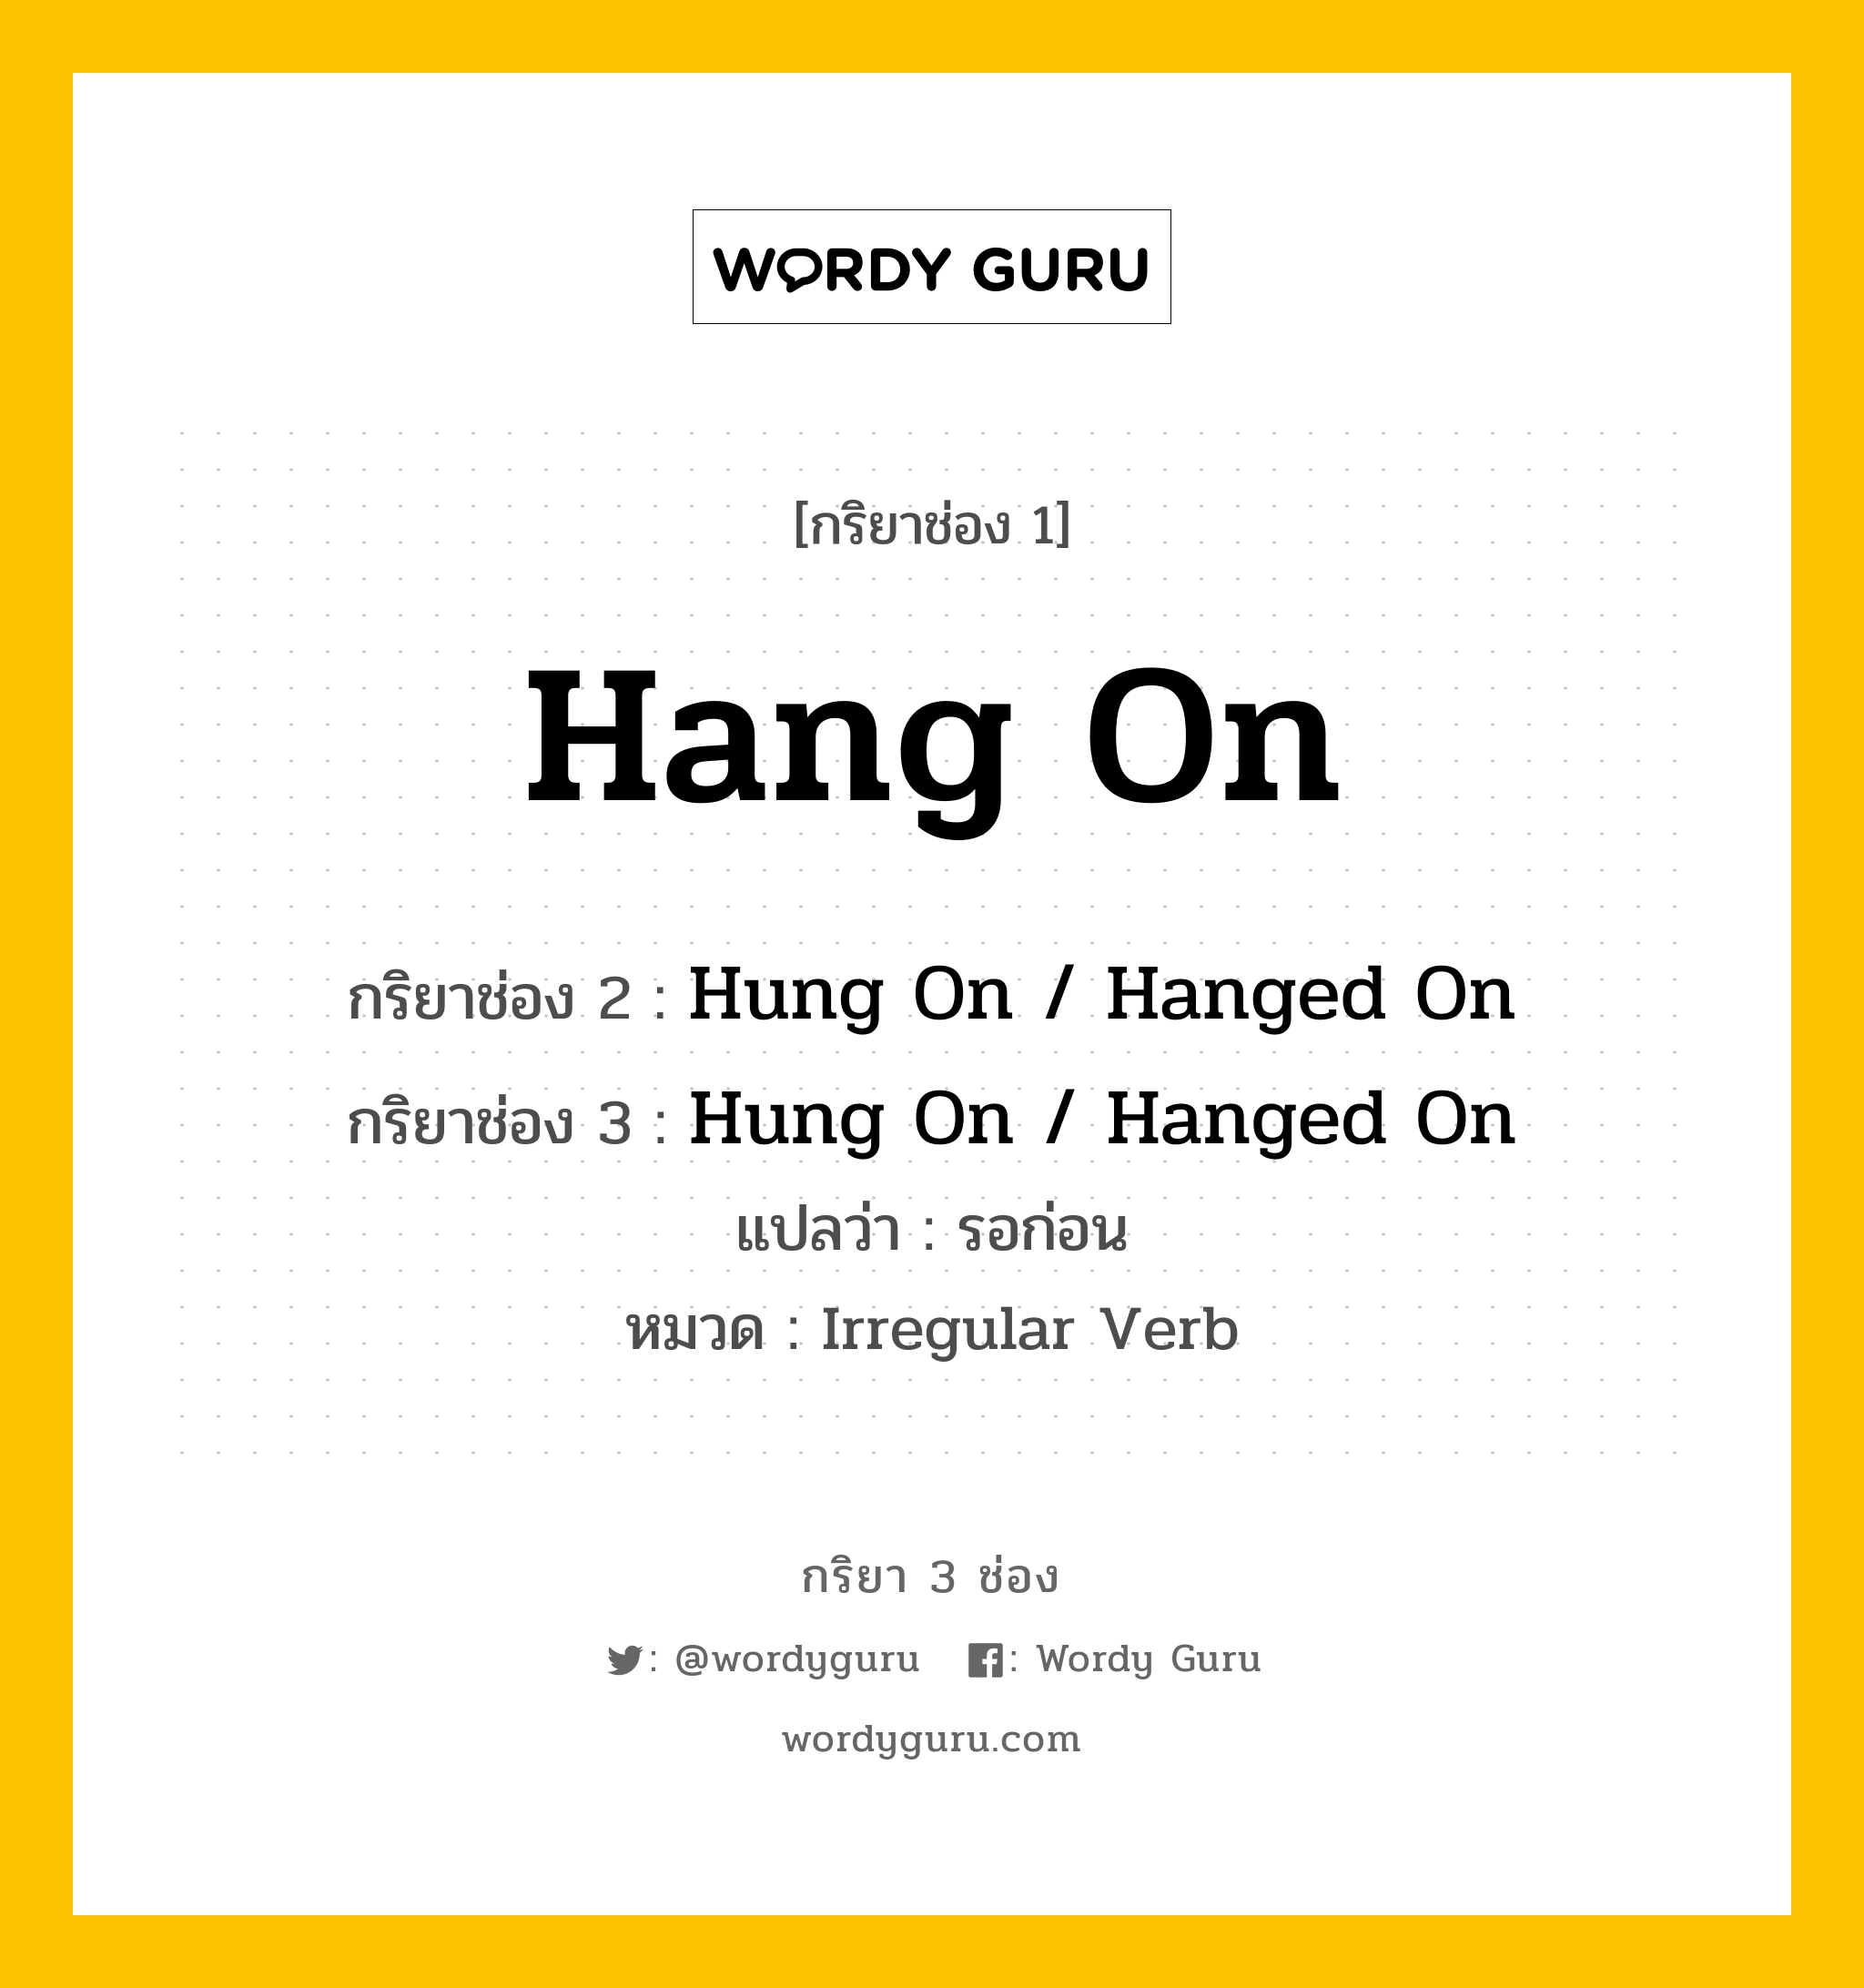 กริยา 3 ช่อง ของ Hang On คืออะไร?, กริยาช่อง 1 Hang On กริยาช่อง 2 Hung On / Hanged On กริยาช่อง 3 Hung On / Hanged On แปลว่า รอก่อน หมวด Irregular Verb หมวด Irregular Verb